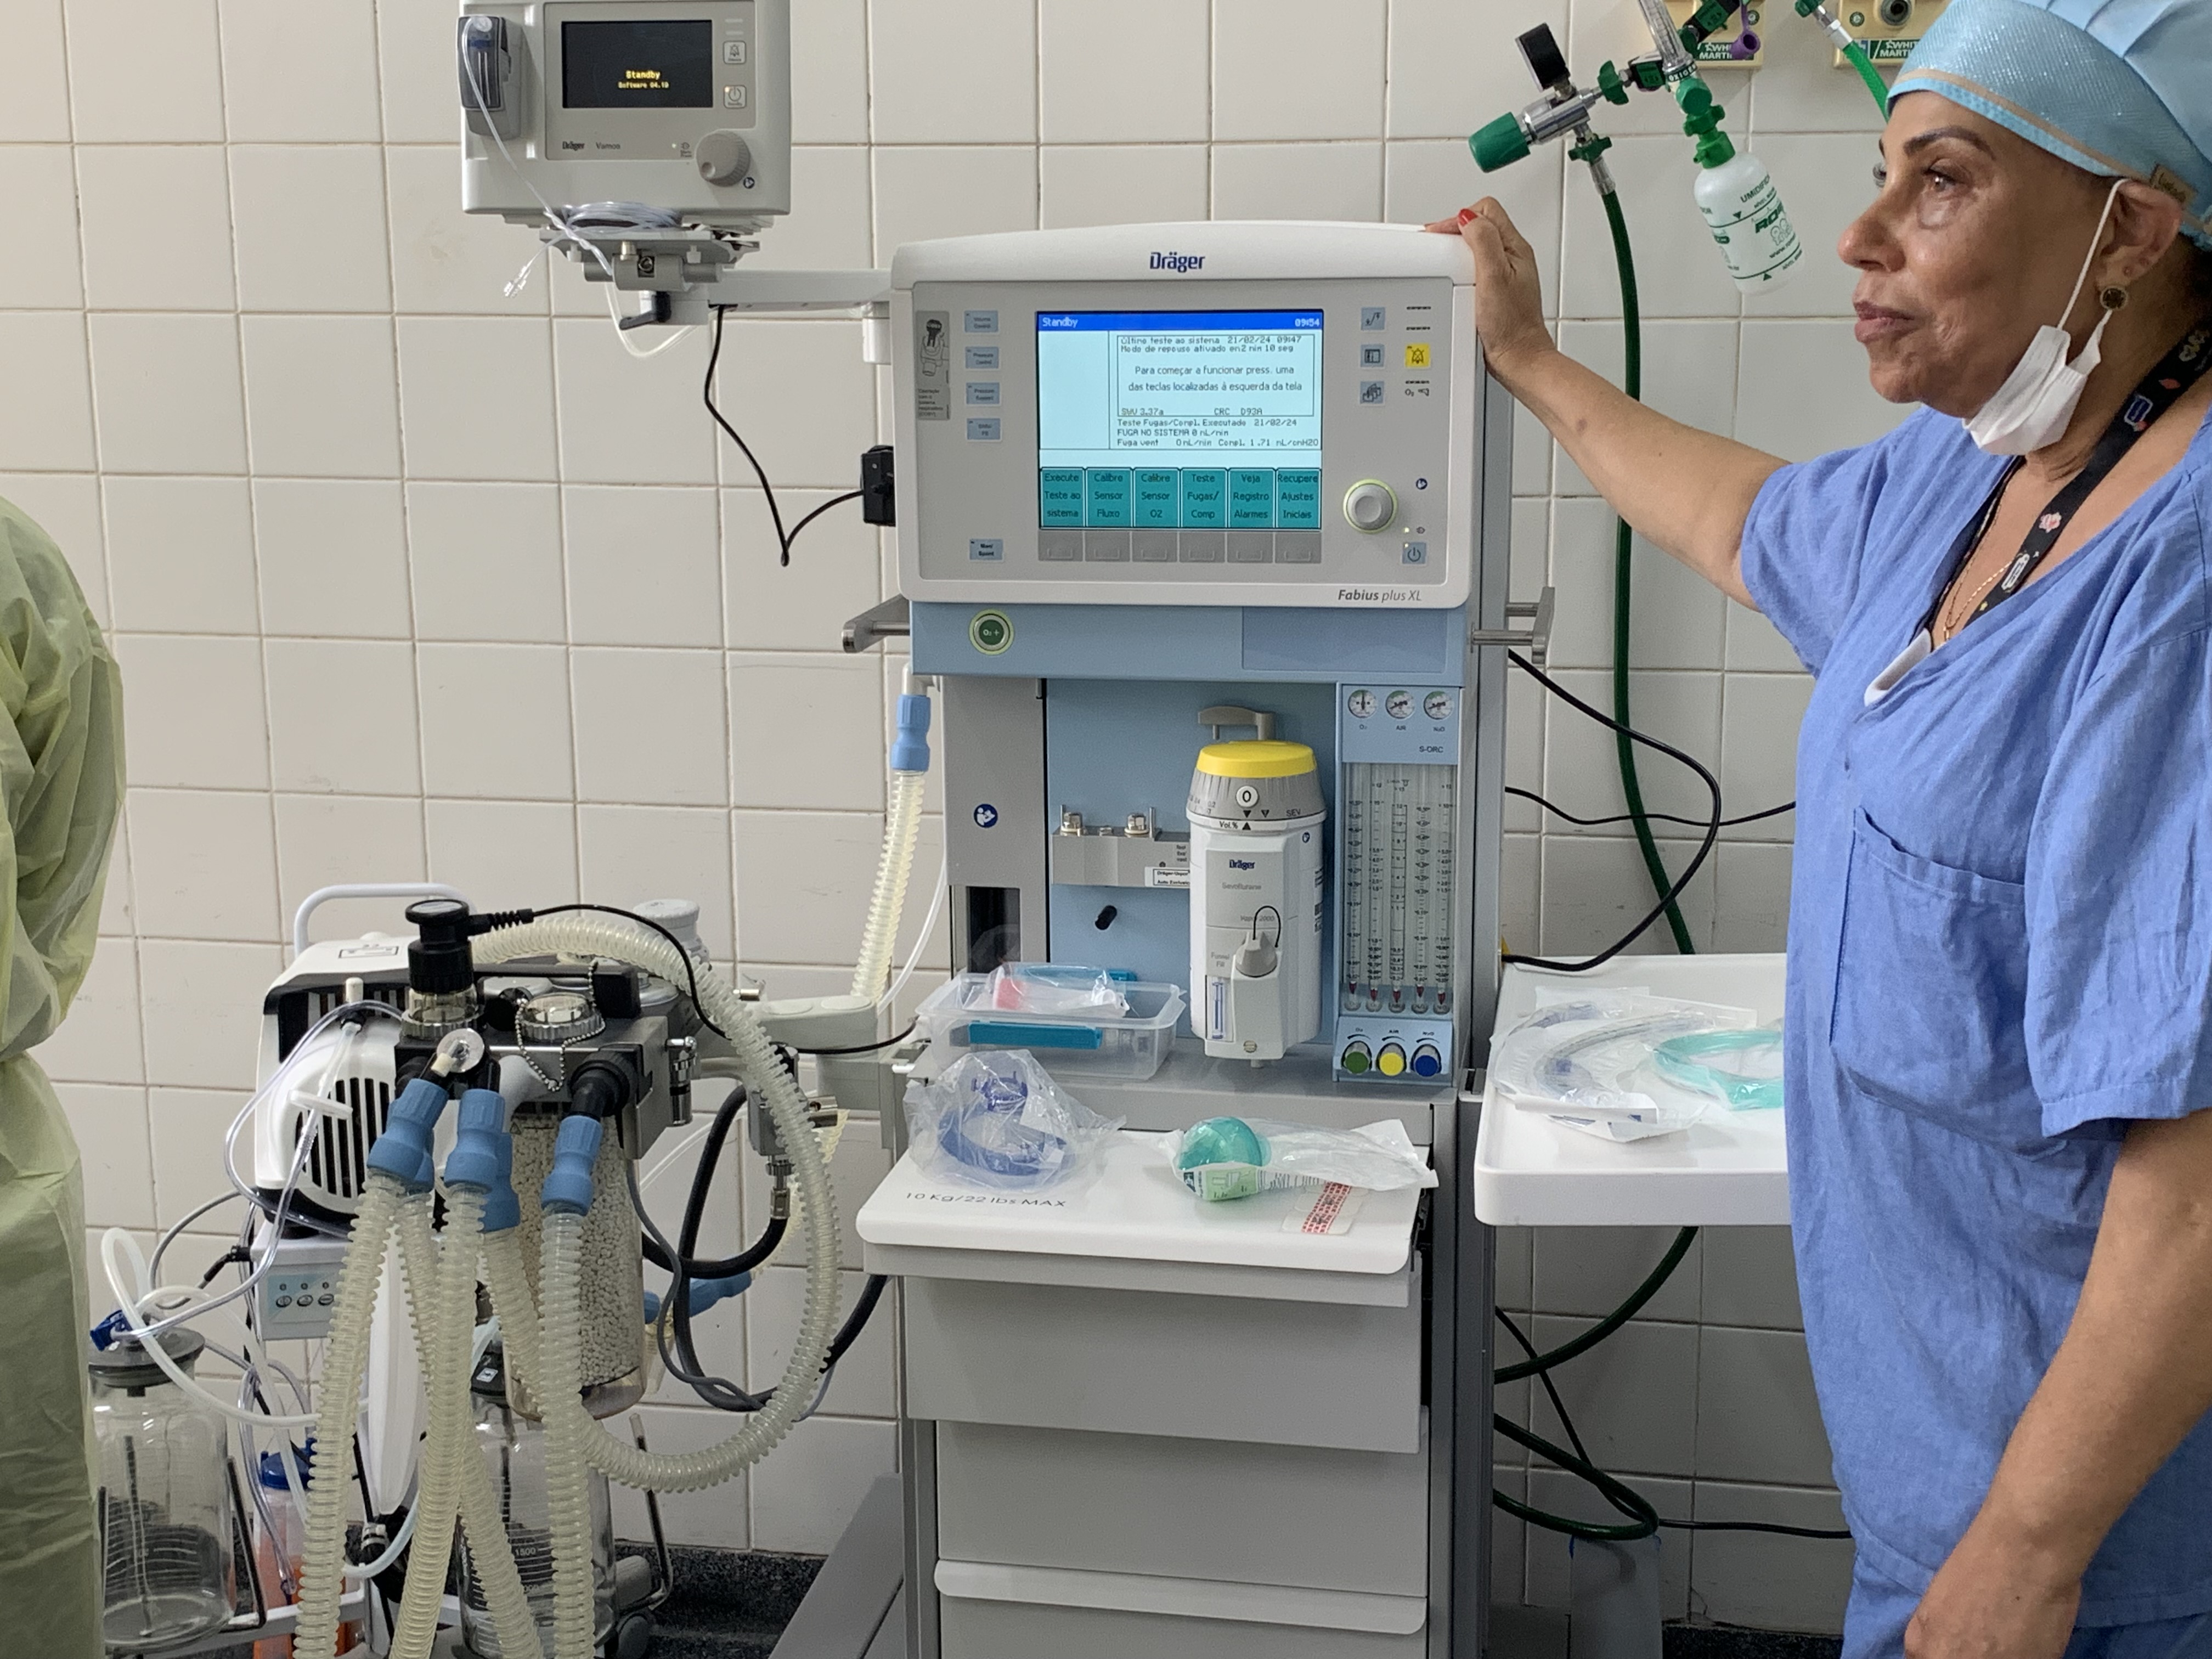 Fotografia do aparelho de anestesia no centro cirúrgico. Ao lado está uma enfermeira , que toca no aparelho enquanto olha em outra direção.